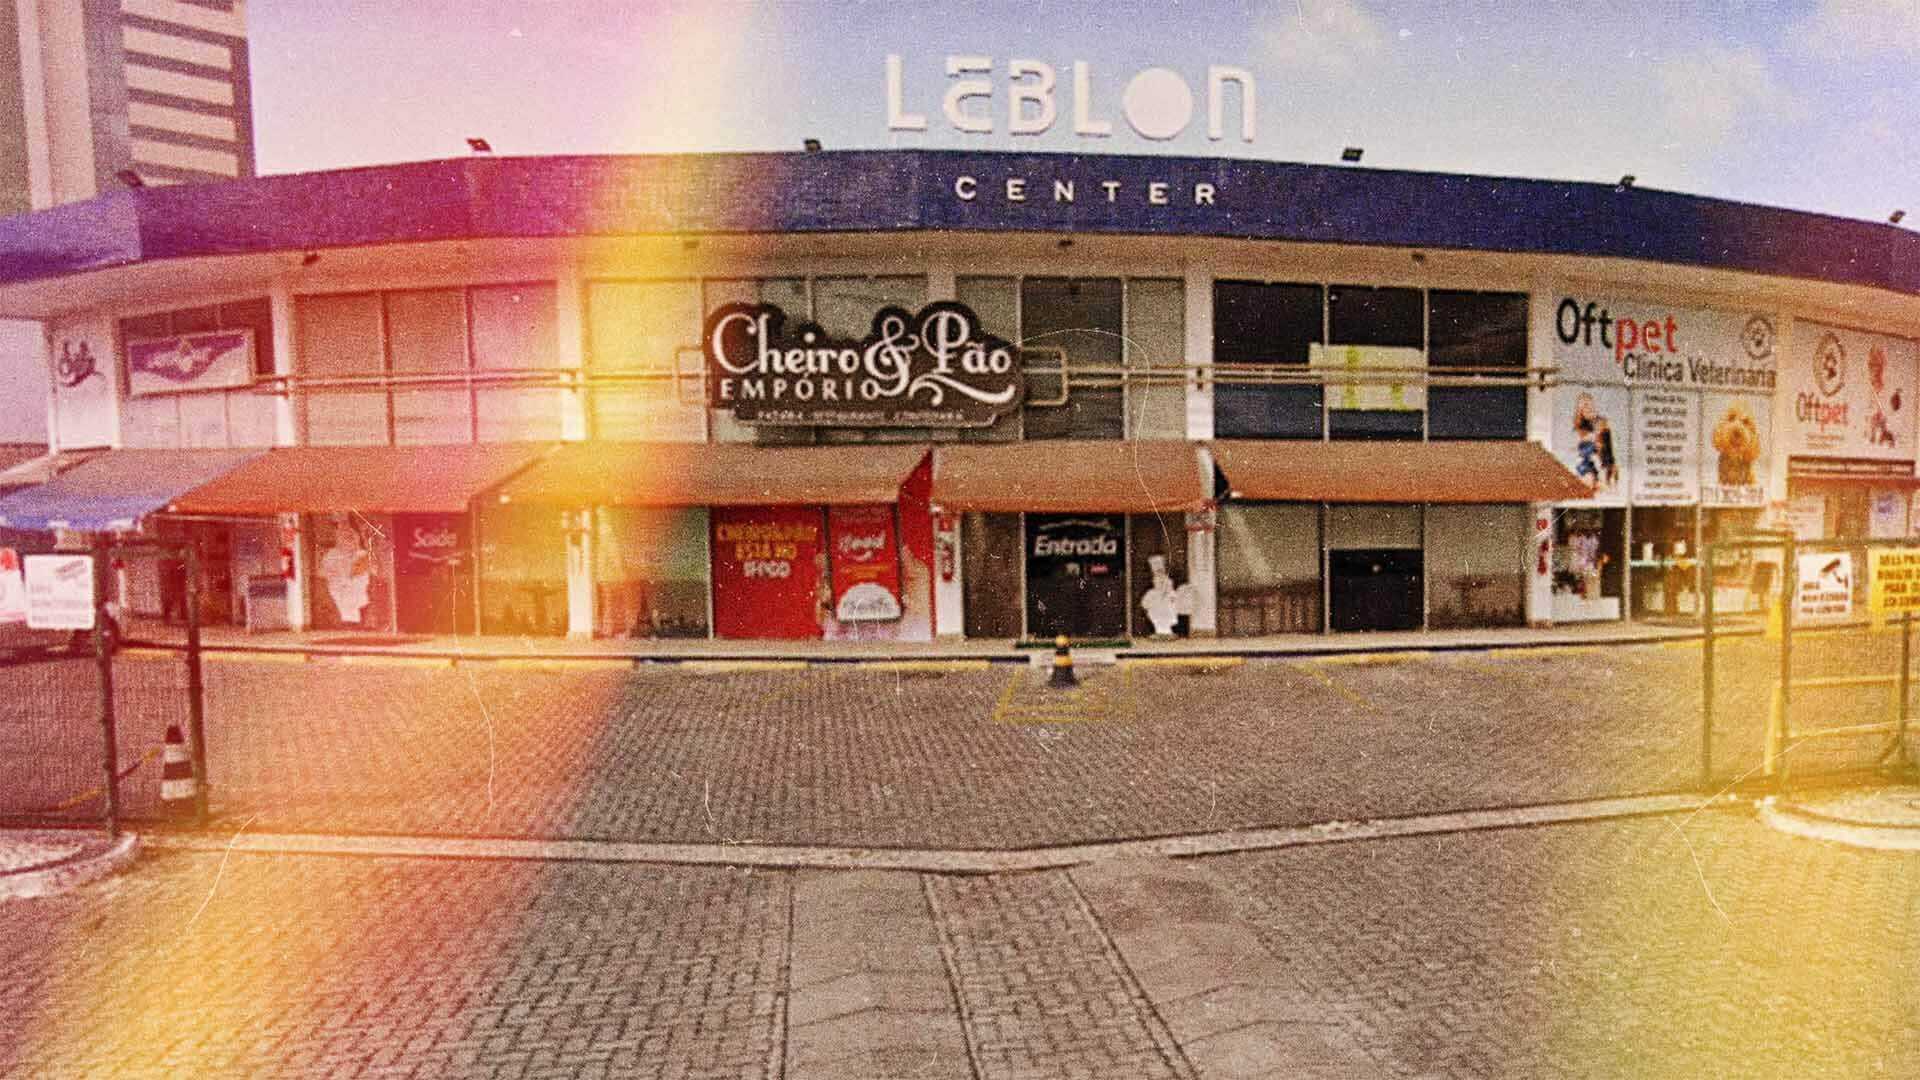 Empório Cheiro e Pão no meio do centro comercial Leblon Center